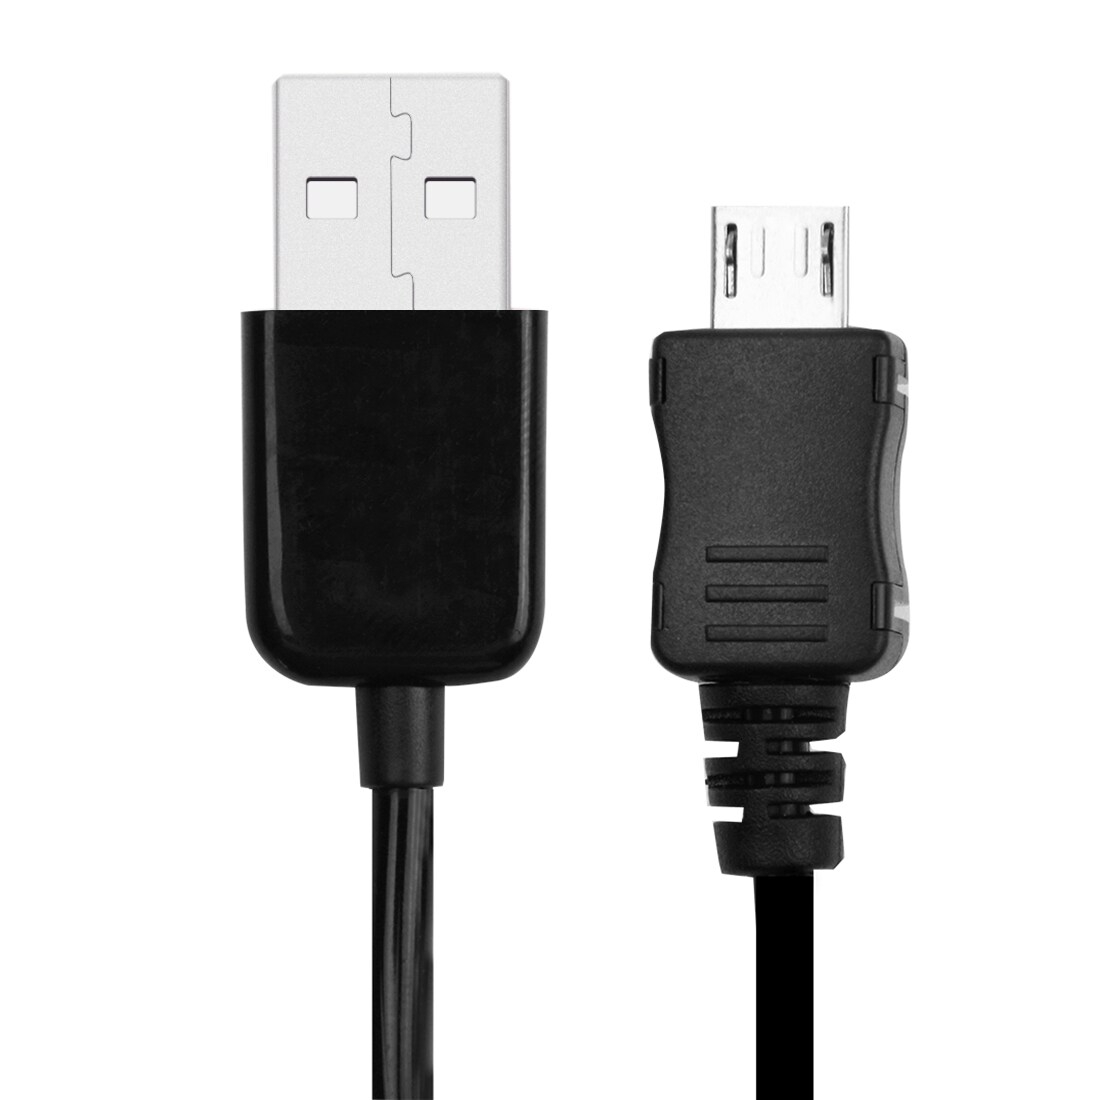 Micro USB-kabel Der Kan Trækkes Ud og Som Ikke Filtrer Sammen- 24-90 cm Langt